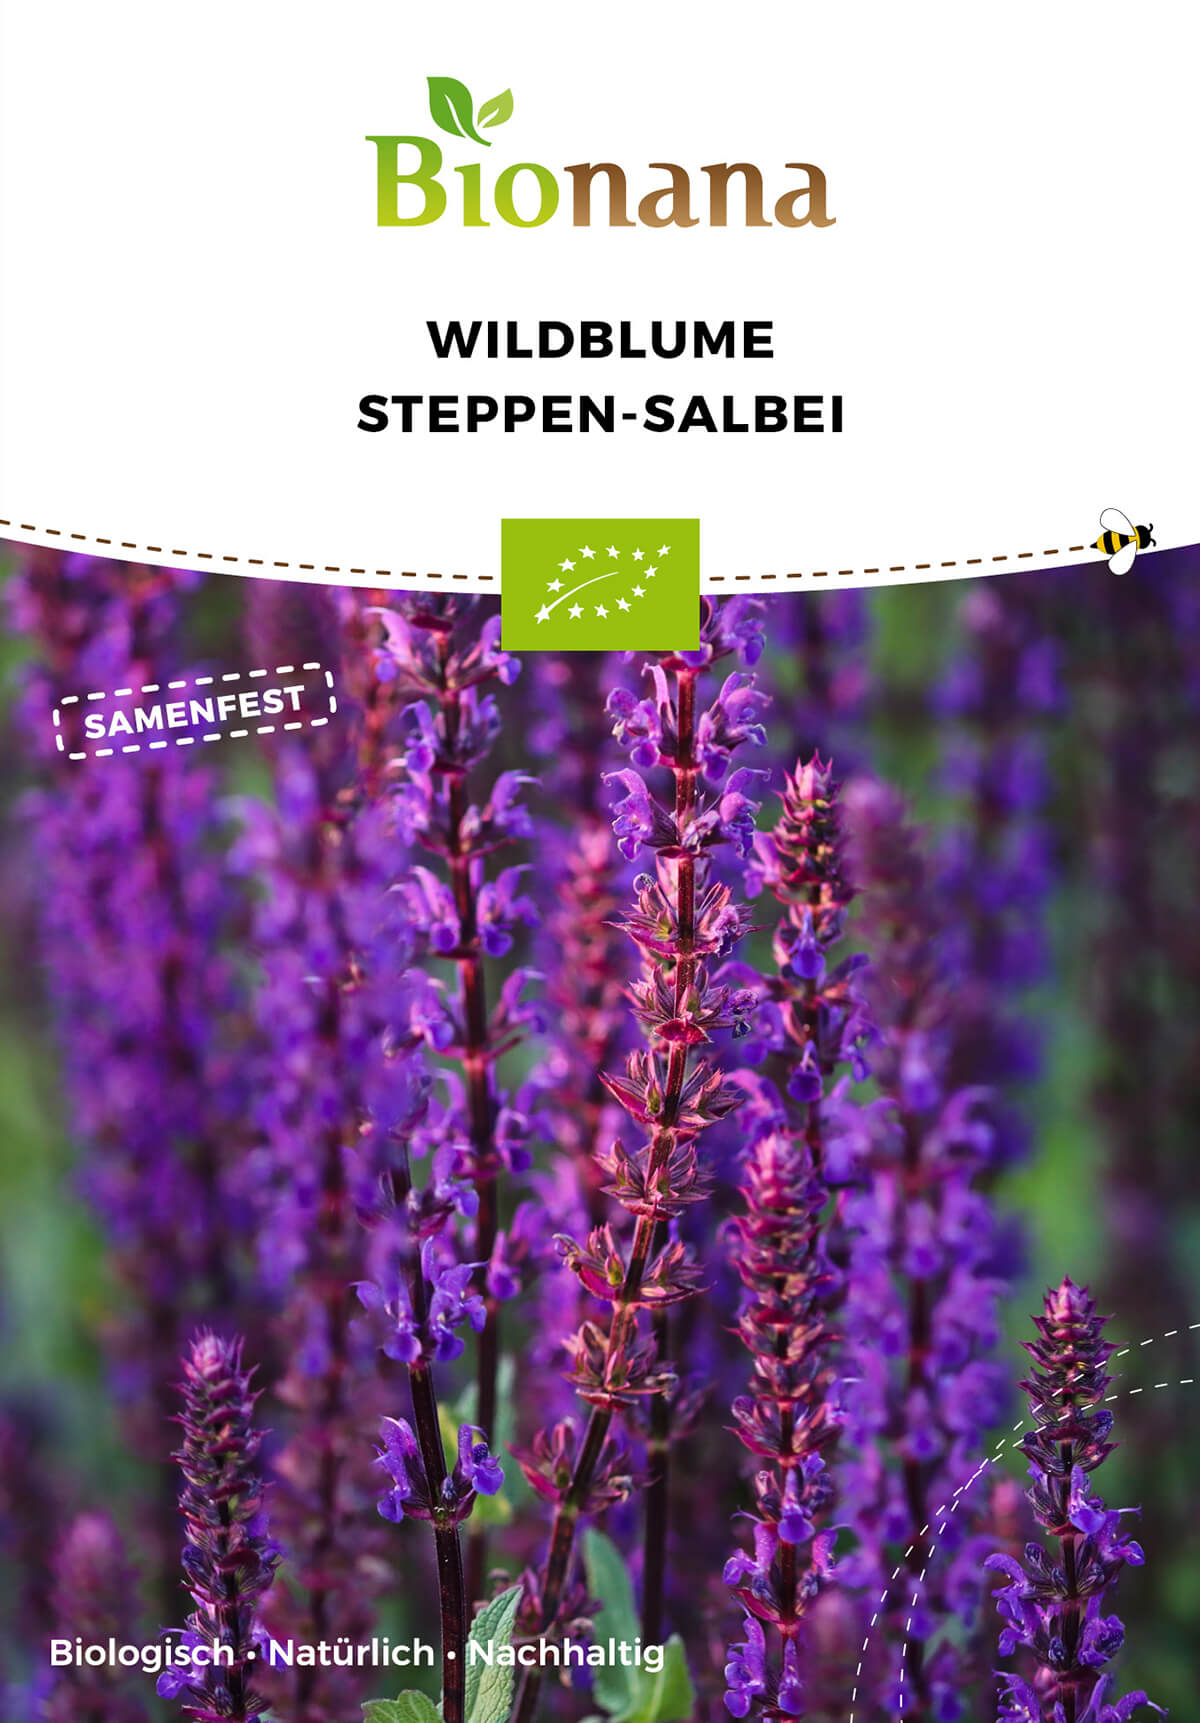 Wildblume Steppen-Salbei | BIO Wildblumensamen von Bionana